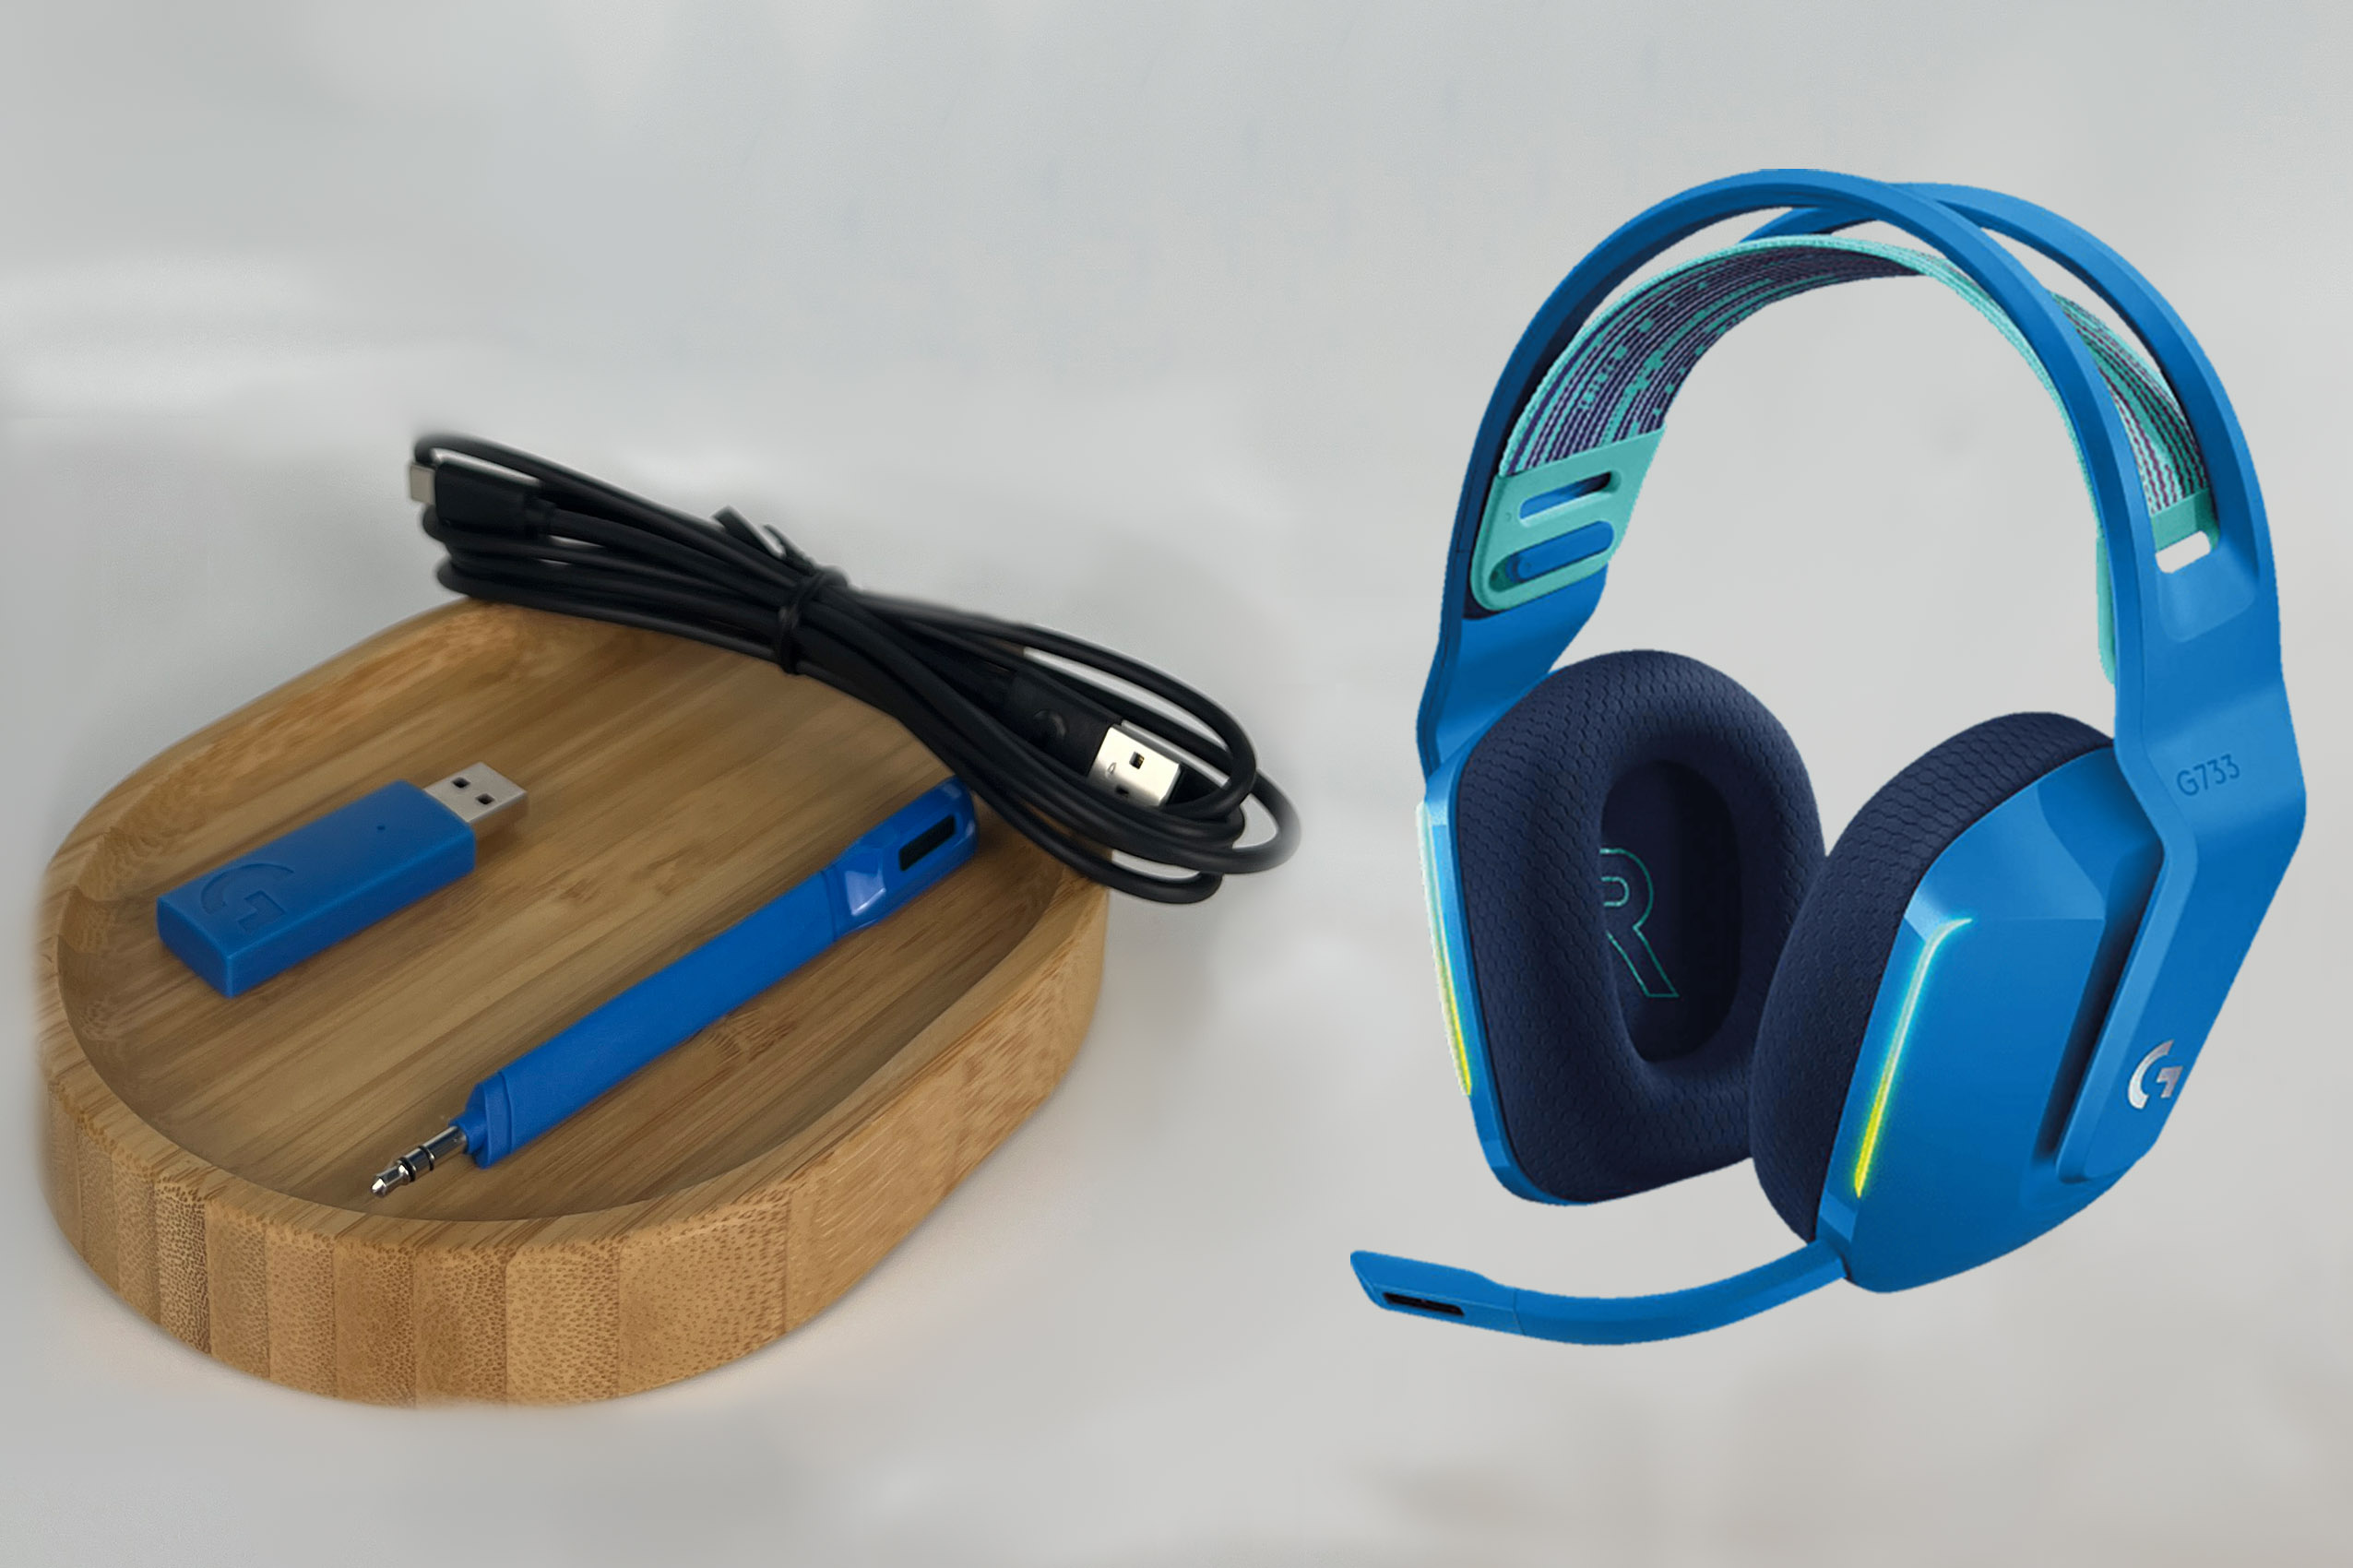 Das Zubehör und das Logitech g733 lightspeed blue Headset